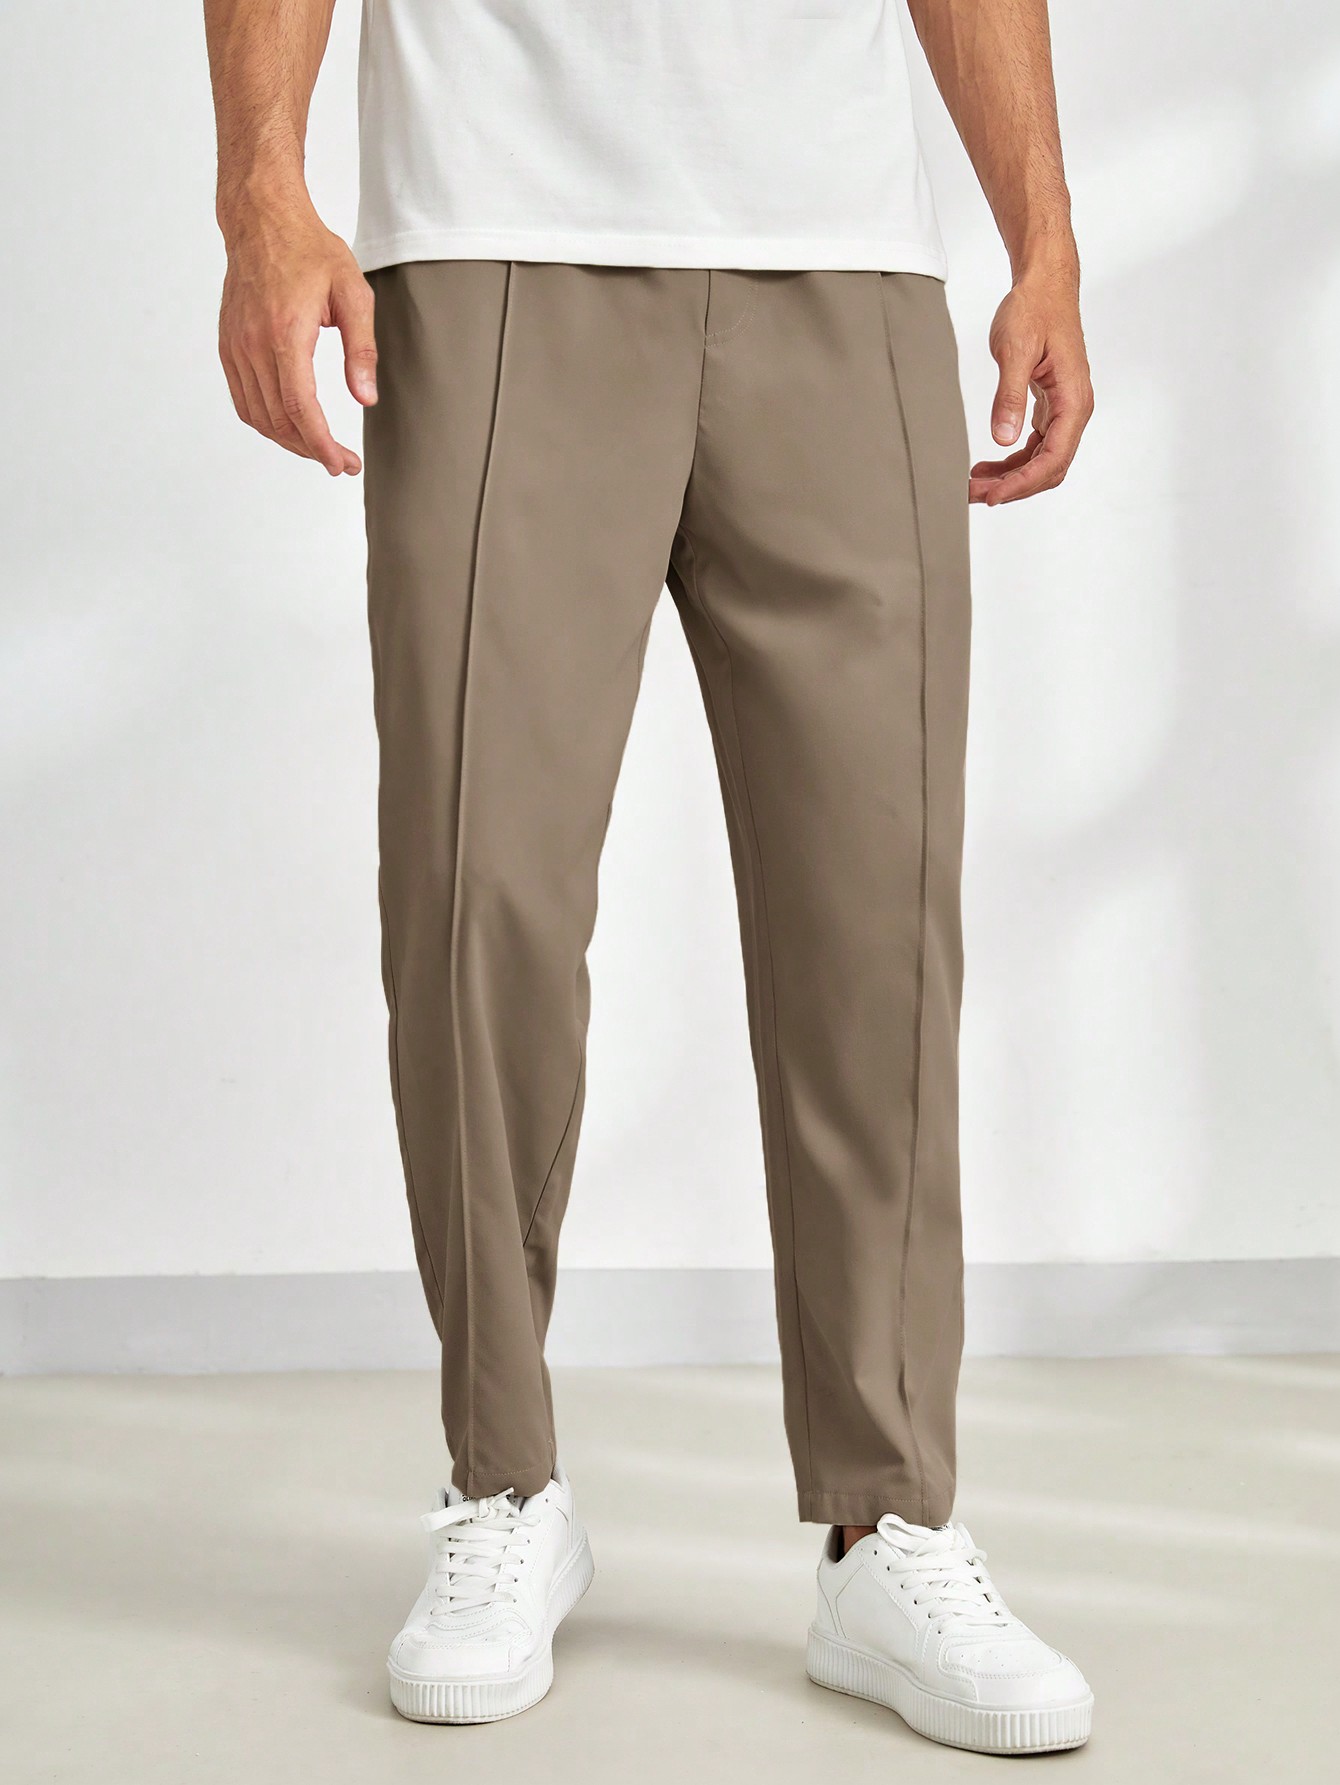 Мужские однотонные повседневные зауженные брюки Manfinity Homme с эластичной резинкой на талии, кофейный коричневый